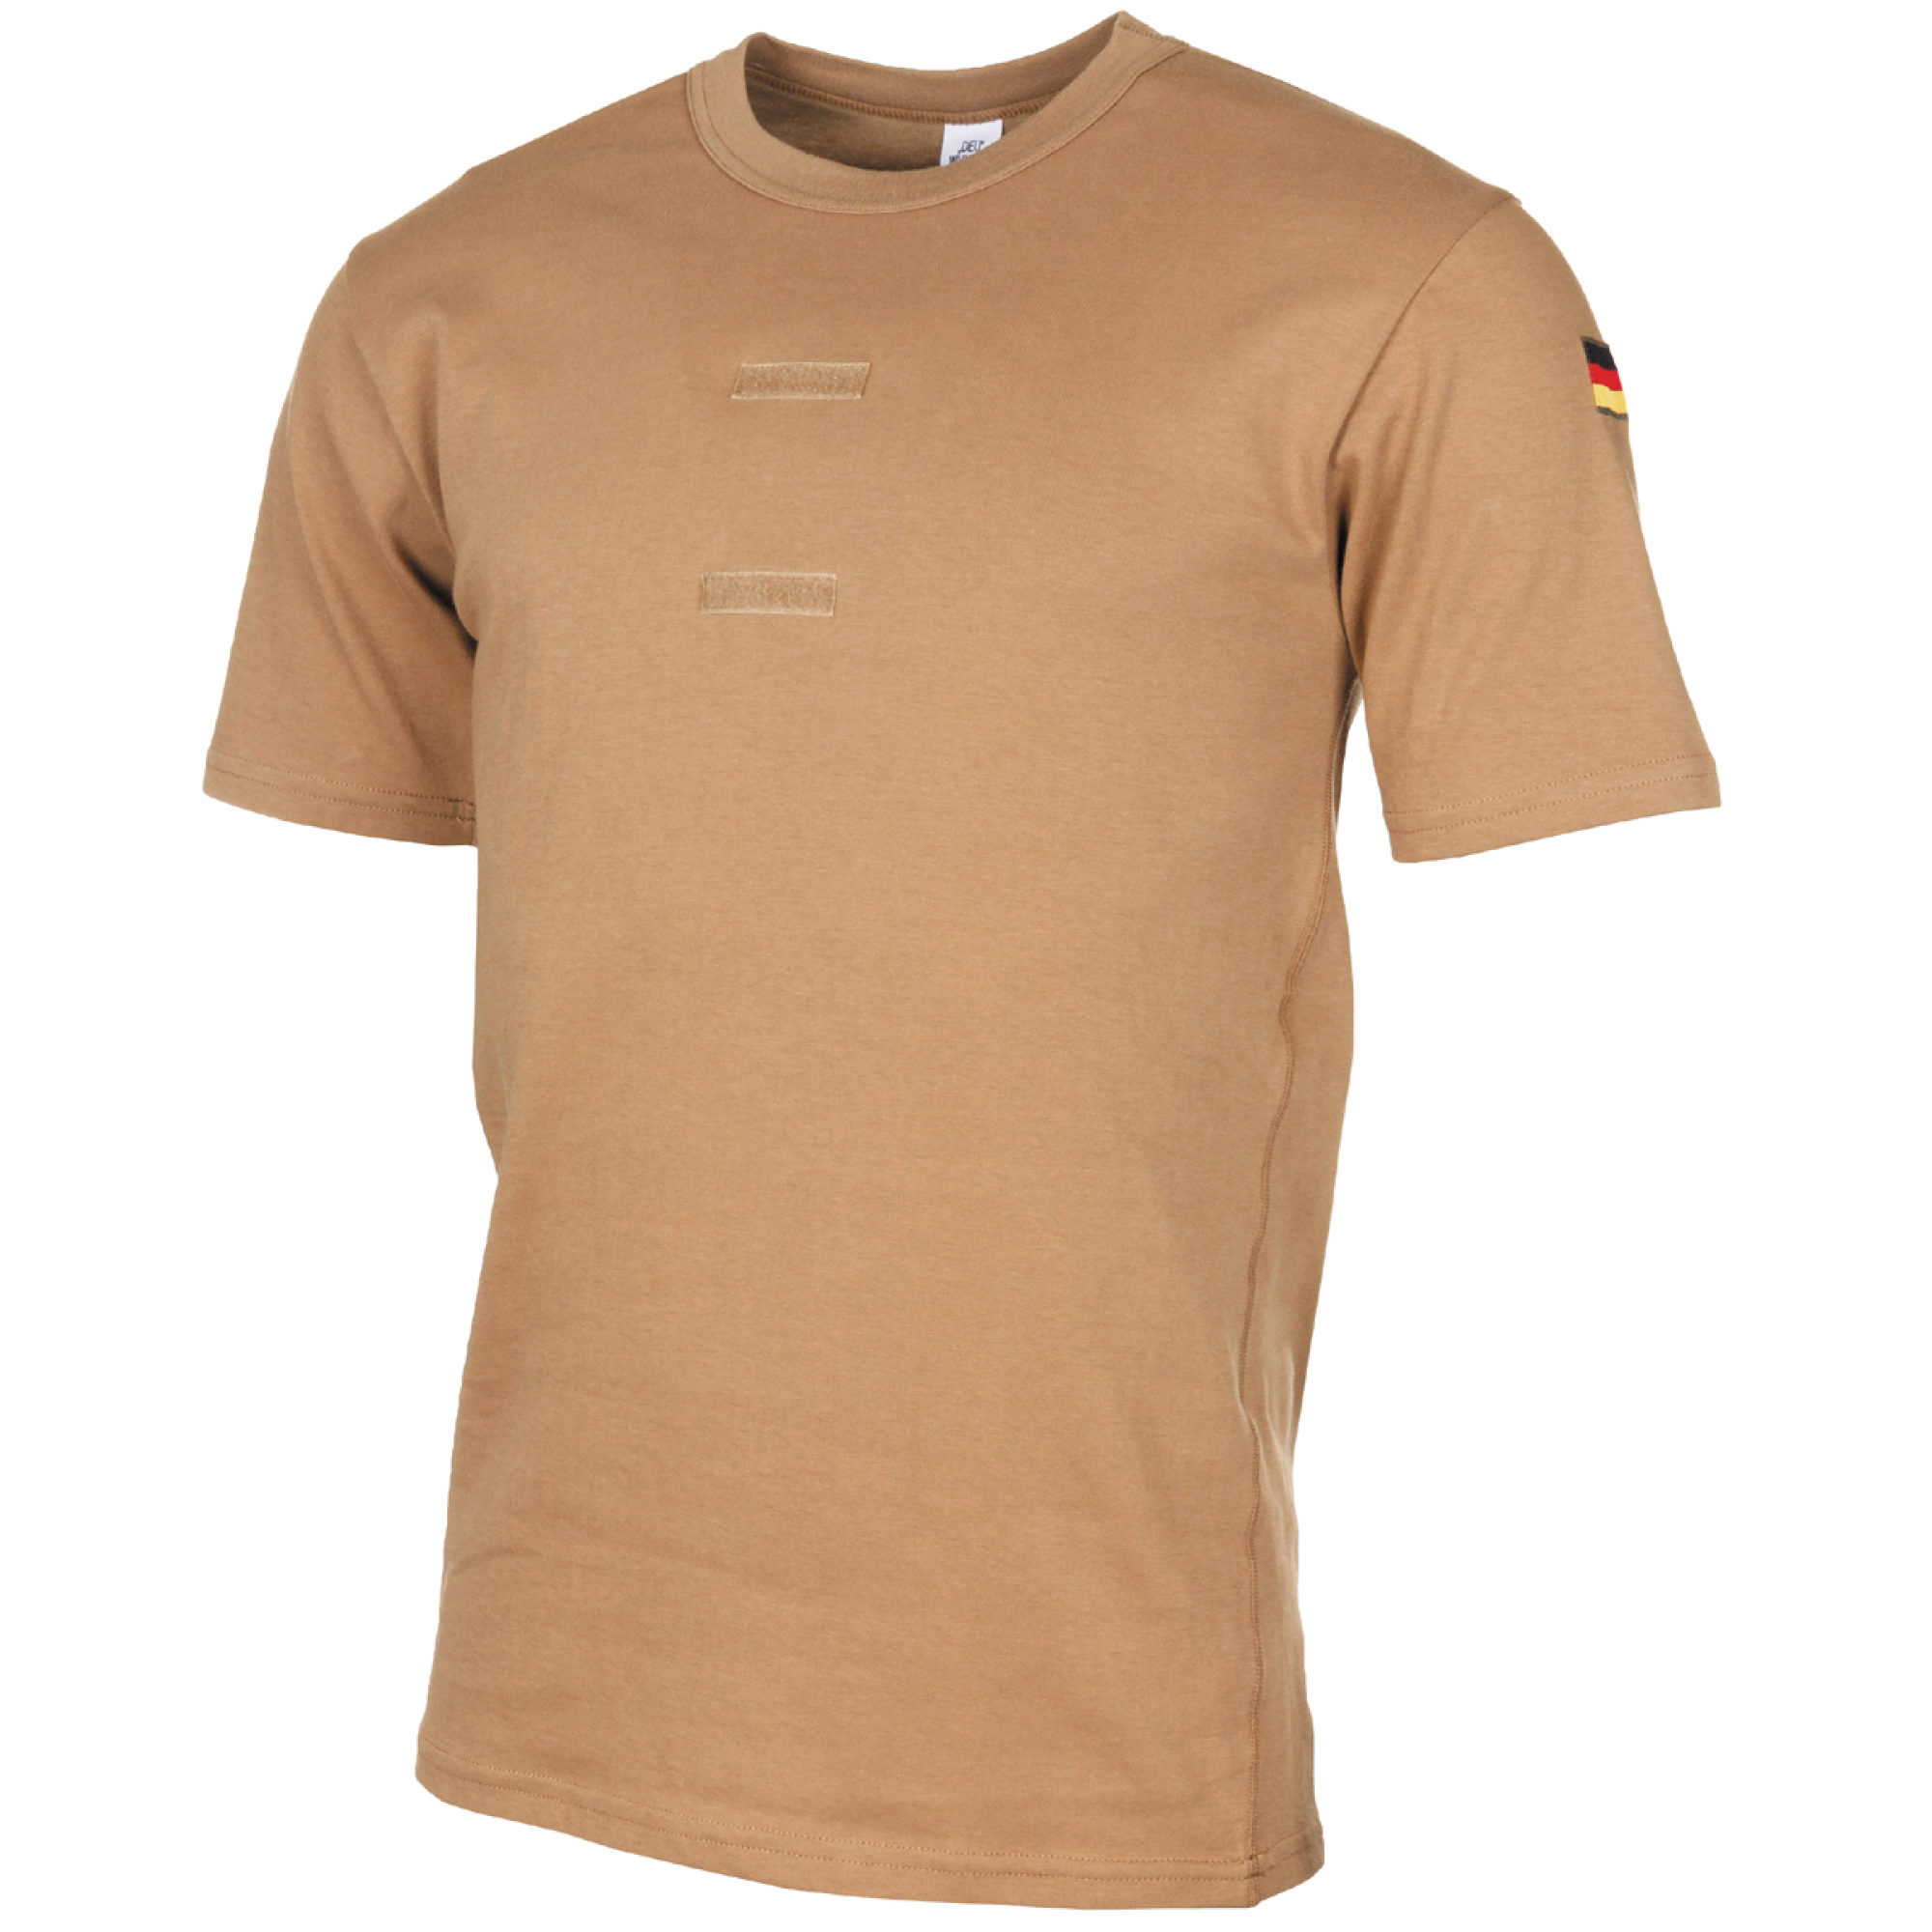 BW Tropen T-Shirt,  neuw., mit Klett und Hoheitsabzeichen (10 Stück)